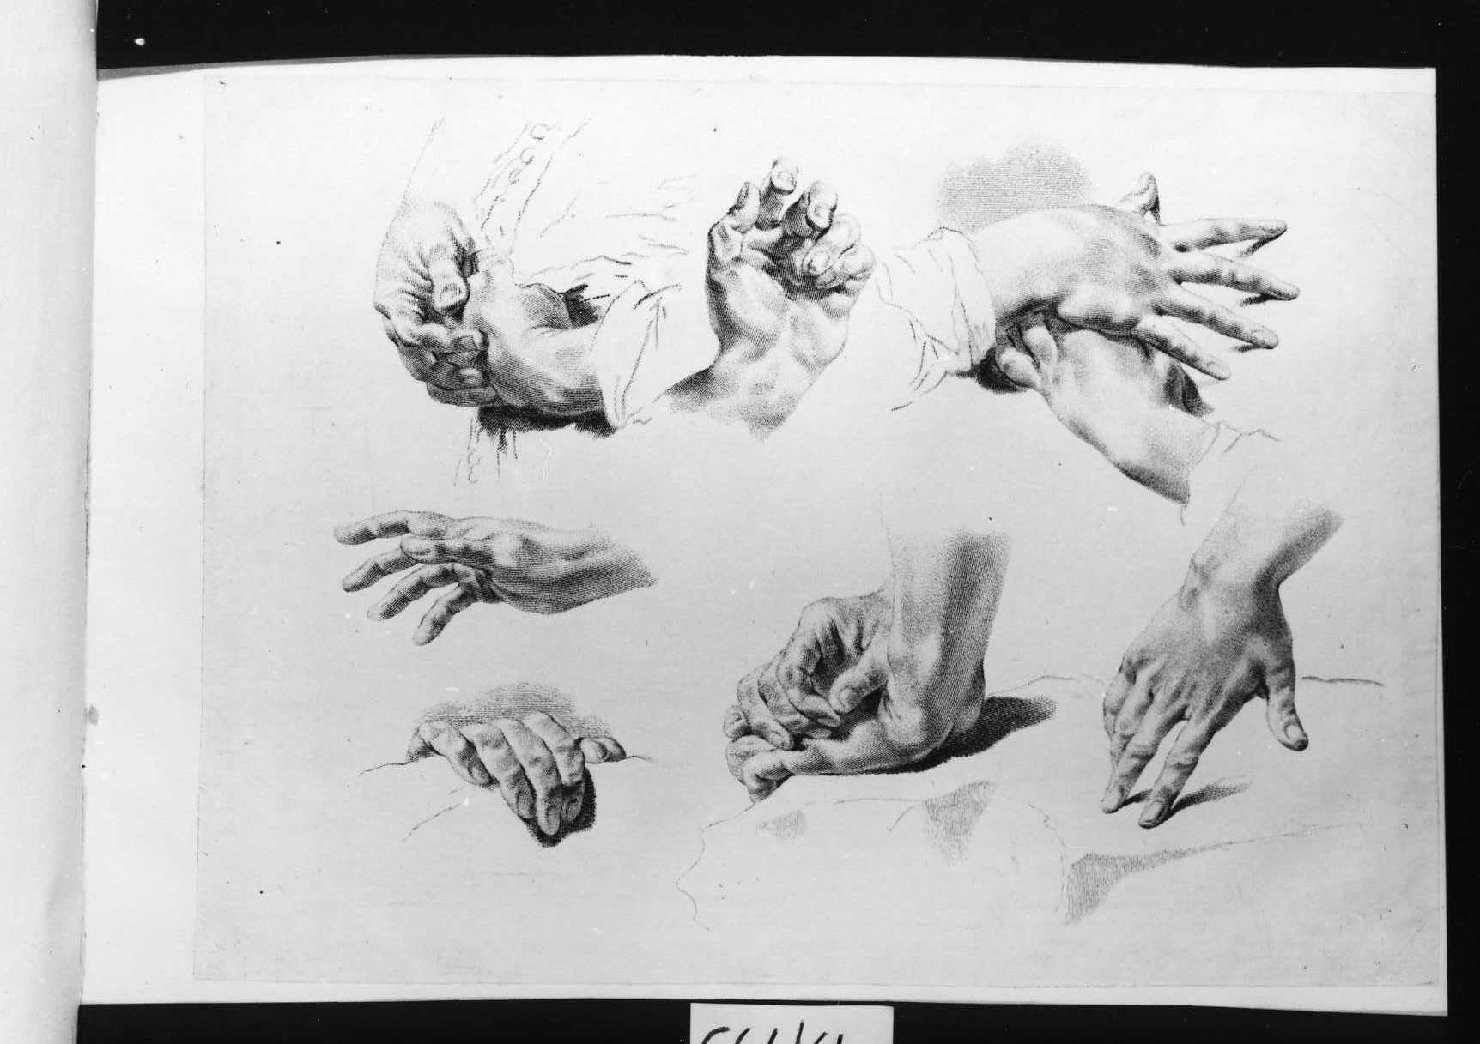 parti anatominche (stampa smarginata, serie) di Piazzetta Giovanni Battista, Pitteri Marco Alvise (sec. XVIII)